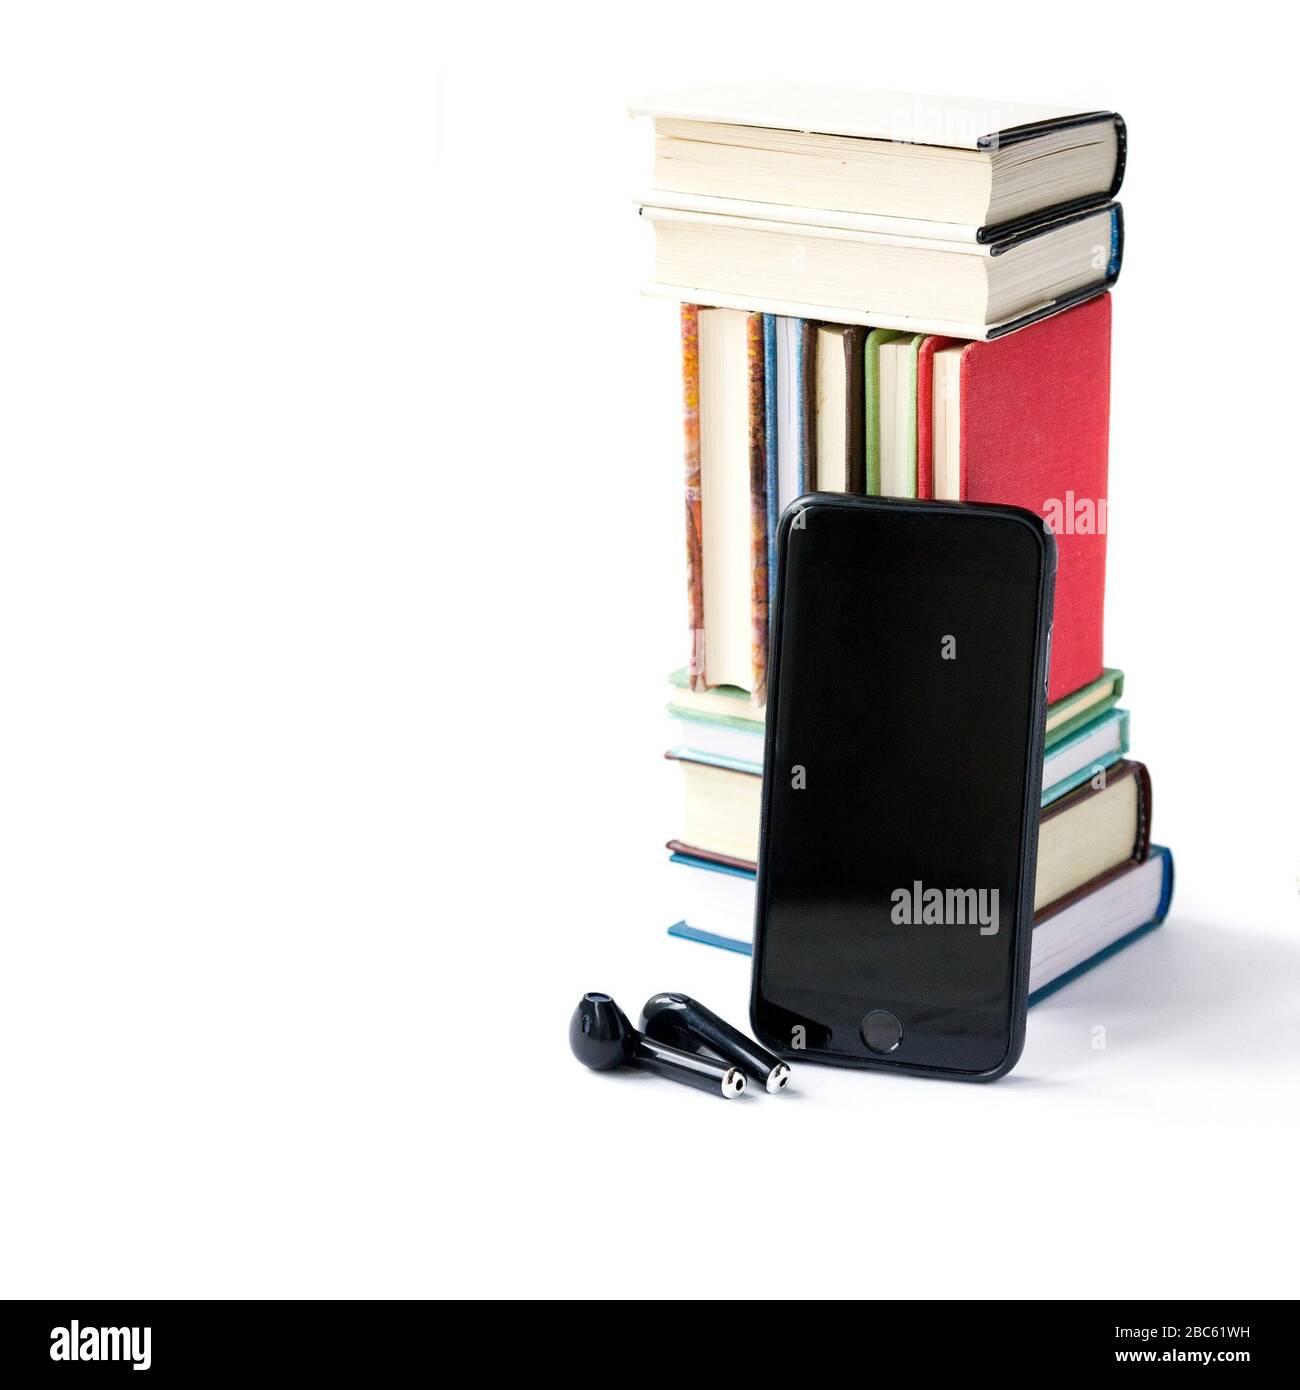 Pile de livres colorés, écouteurs et téléphone mobile, bibliothèque mobile dans le concept de smartphone, livres audio, écoute de livres électroniques au format audio. Livres onl Banque D'Images